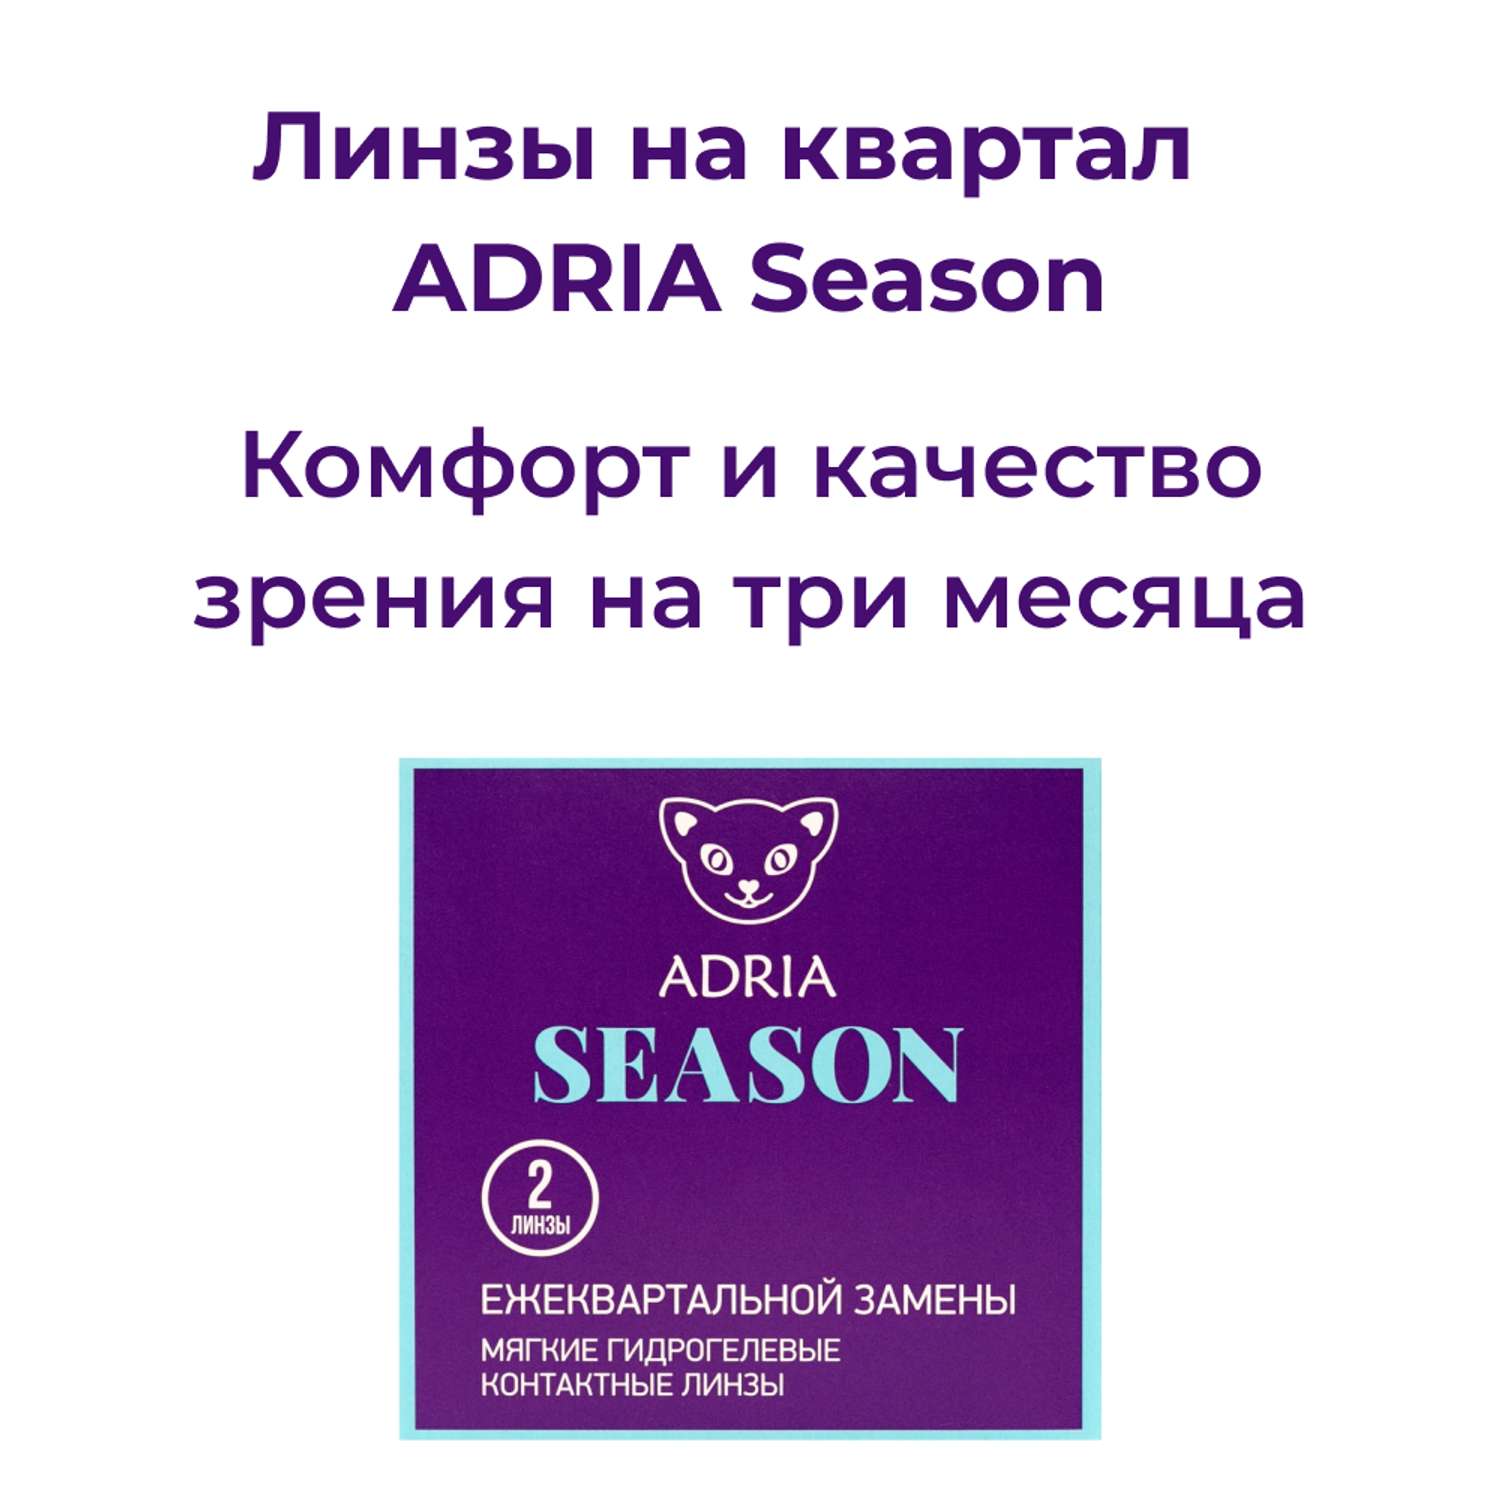 Контактные линзы ADRIA Season 2 линзы R 8.6 -3.25 - фото 2